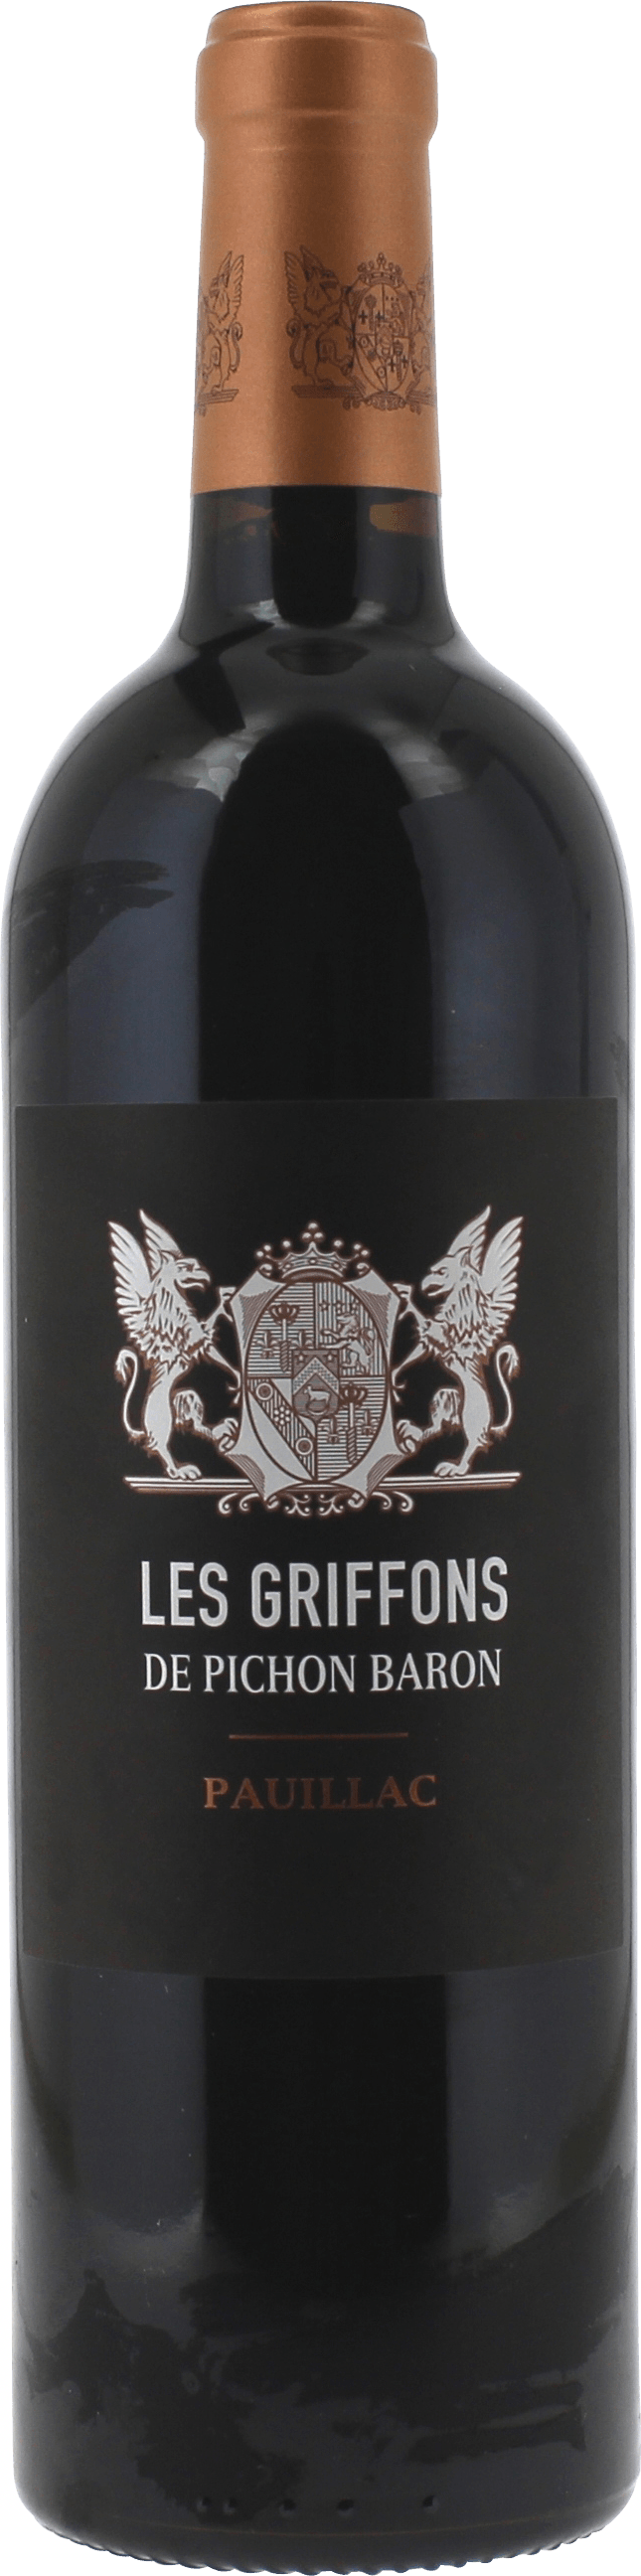 Griffons de pichon baron 2021  Pauillac, Bordeaux rouge